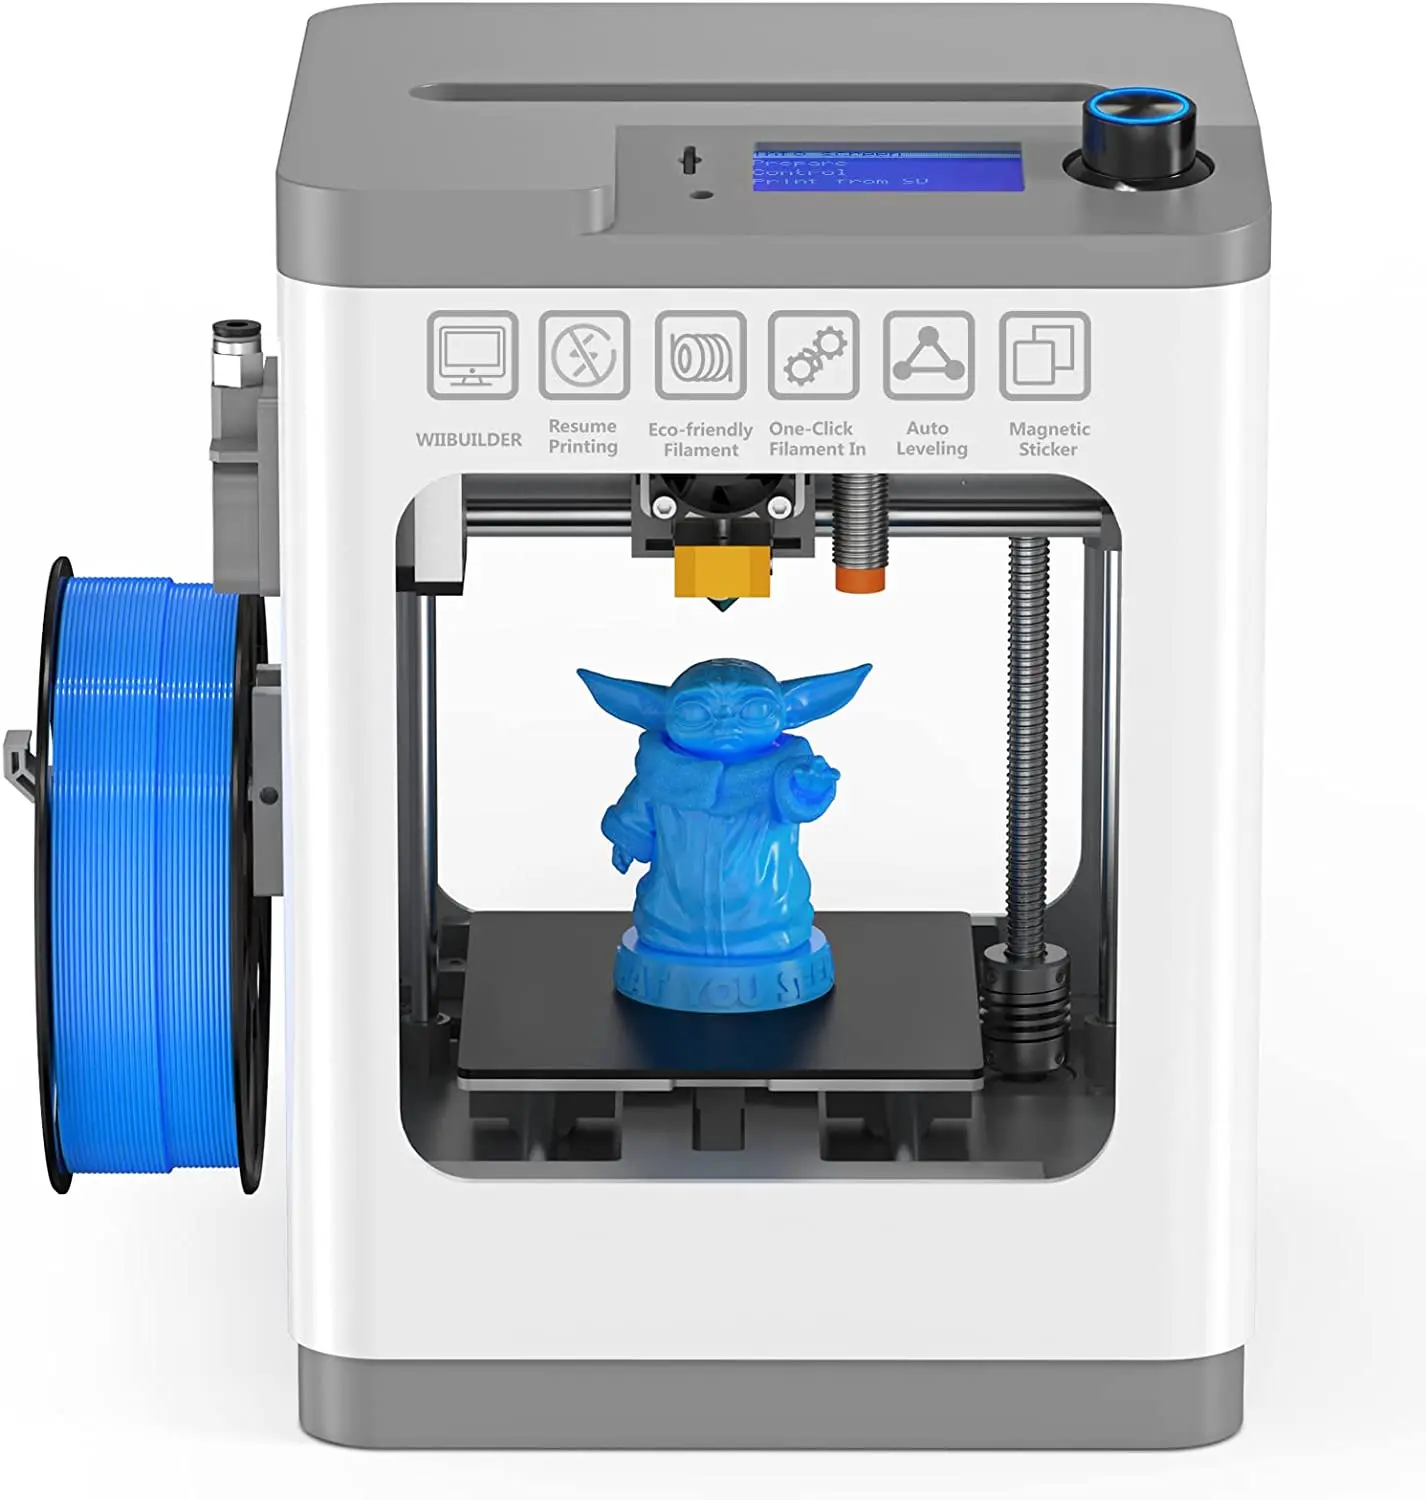 

3D принтер WEEFUN Mini, FDM 3D-принтер с функцией возобновления печати, краткое руководство, полностью собранный, самовыравнивающийся, съемный